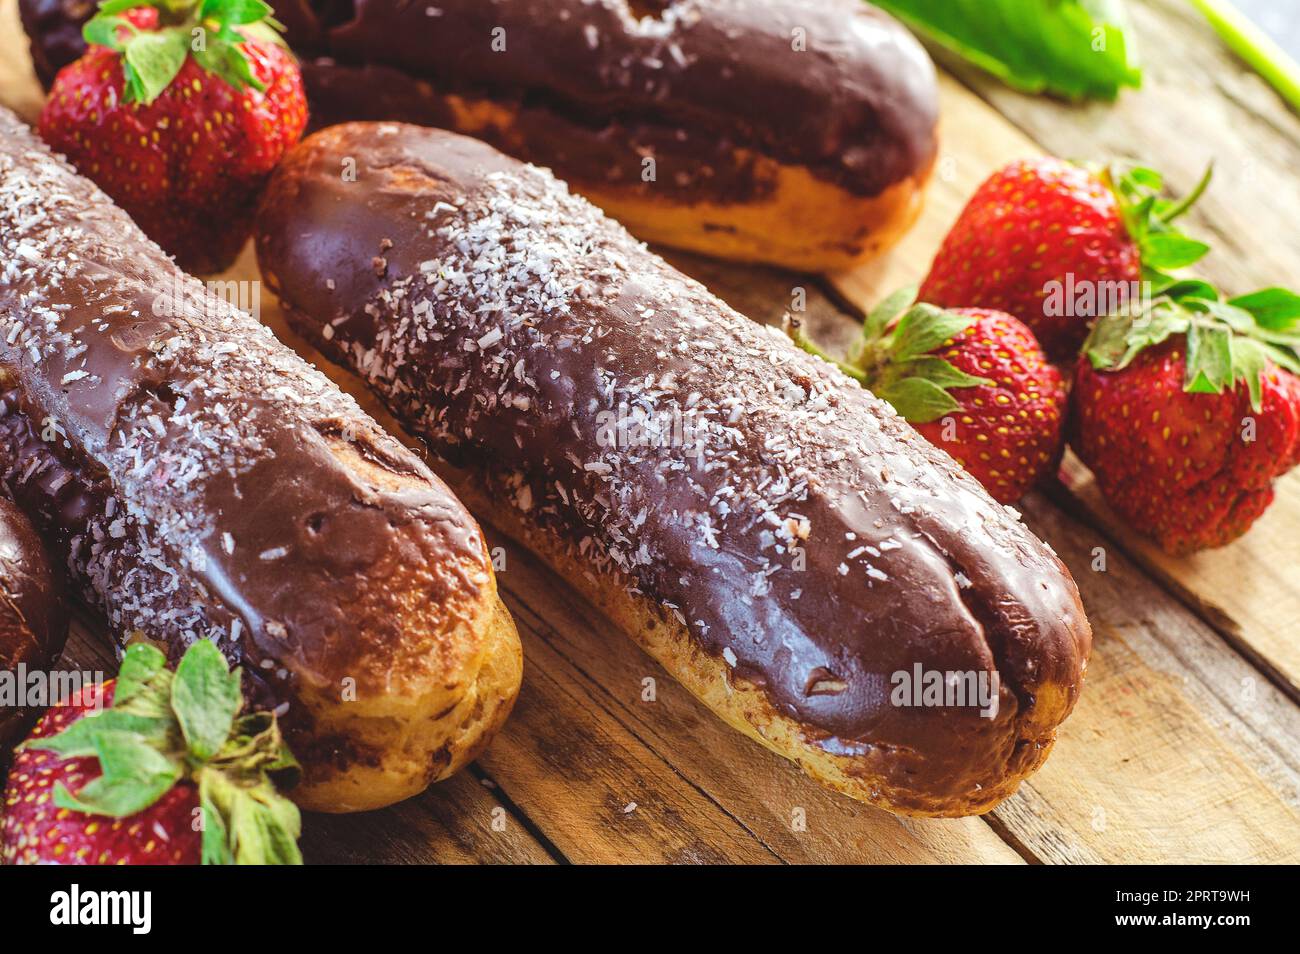 Profiteroles au chocolat et fraises fraîches sur une table en bois Banque D'Images